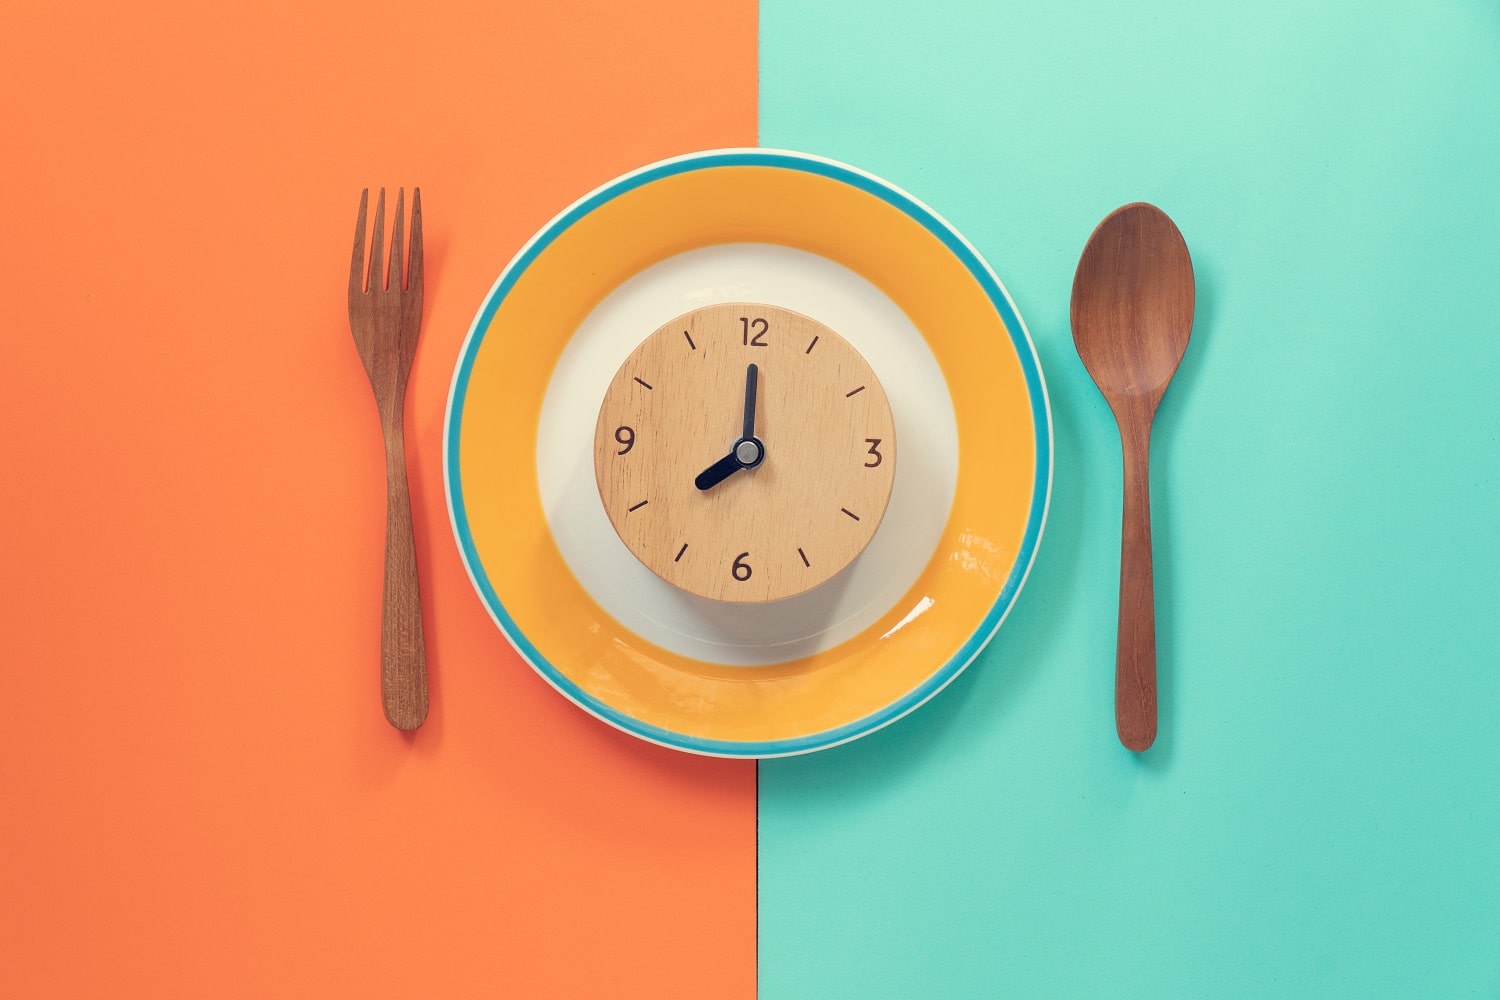 Care-i treaba cu fasting-ul? Ghid de inițiere rapidă într-ale postului intermitent